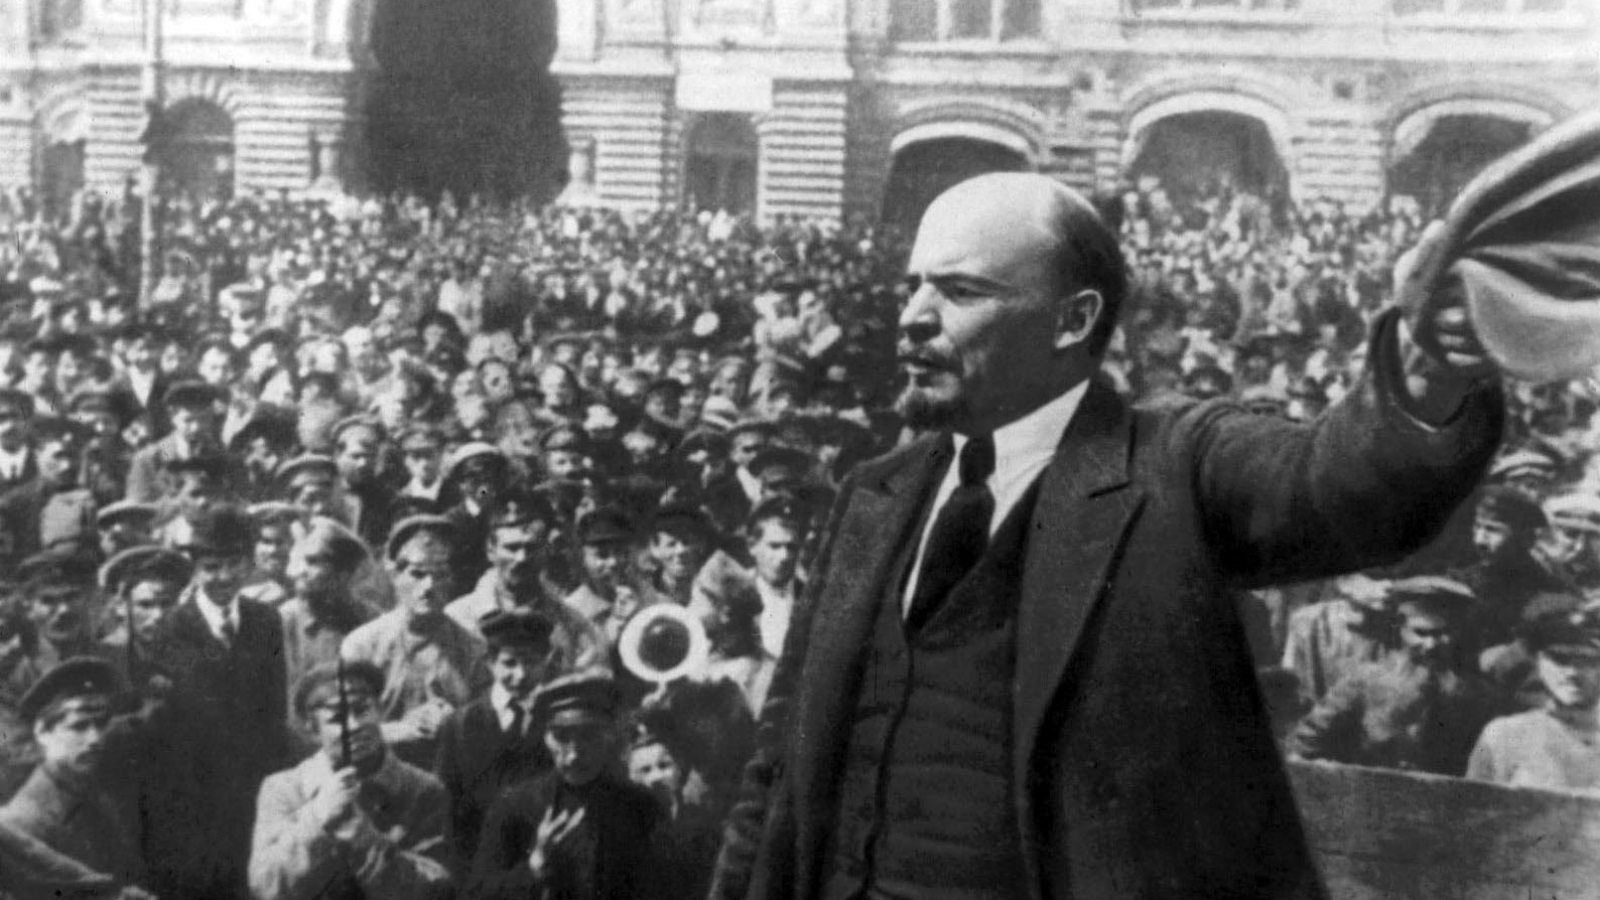 الثورات الشيوعيّة التي هزّت روسيا في عام 1917  أحداثا دمويّة للغاية. وفي غضون سنوات قليلة، ألغى الثوّار الملكيّة الخاصة للأراضي، وقاموا بتأميم جميع الأعمال تقريبا (مواقع التواصل الإجتماعي)